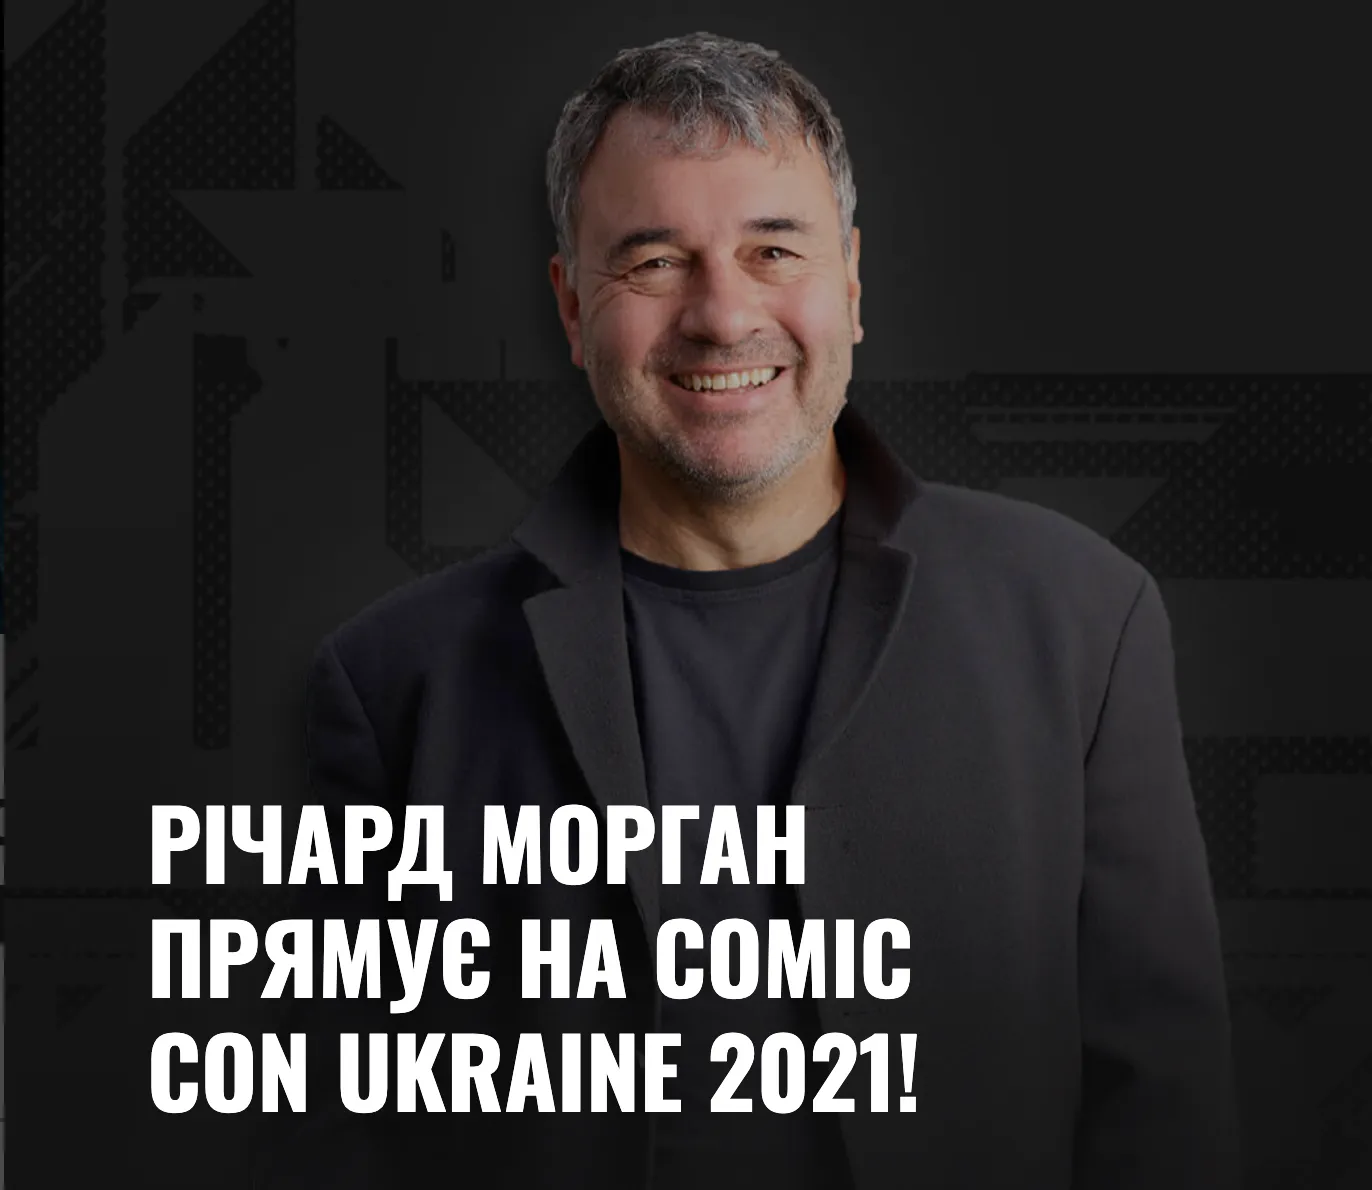 Річард Морган на Comic Con Ukraine